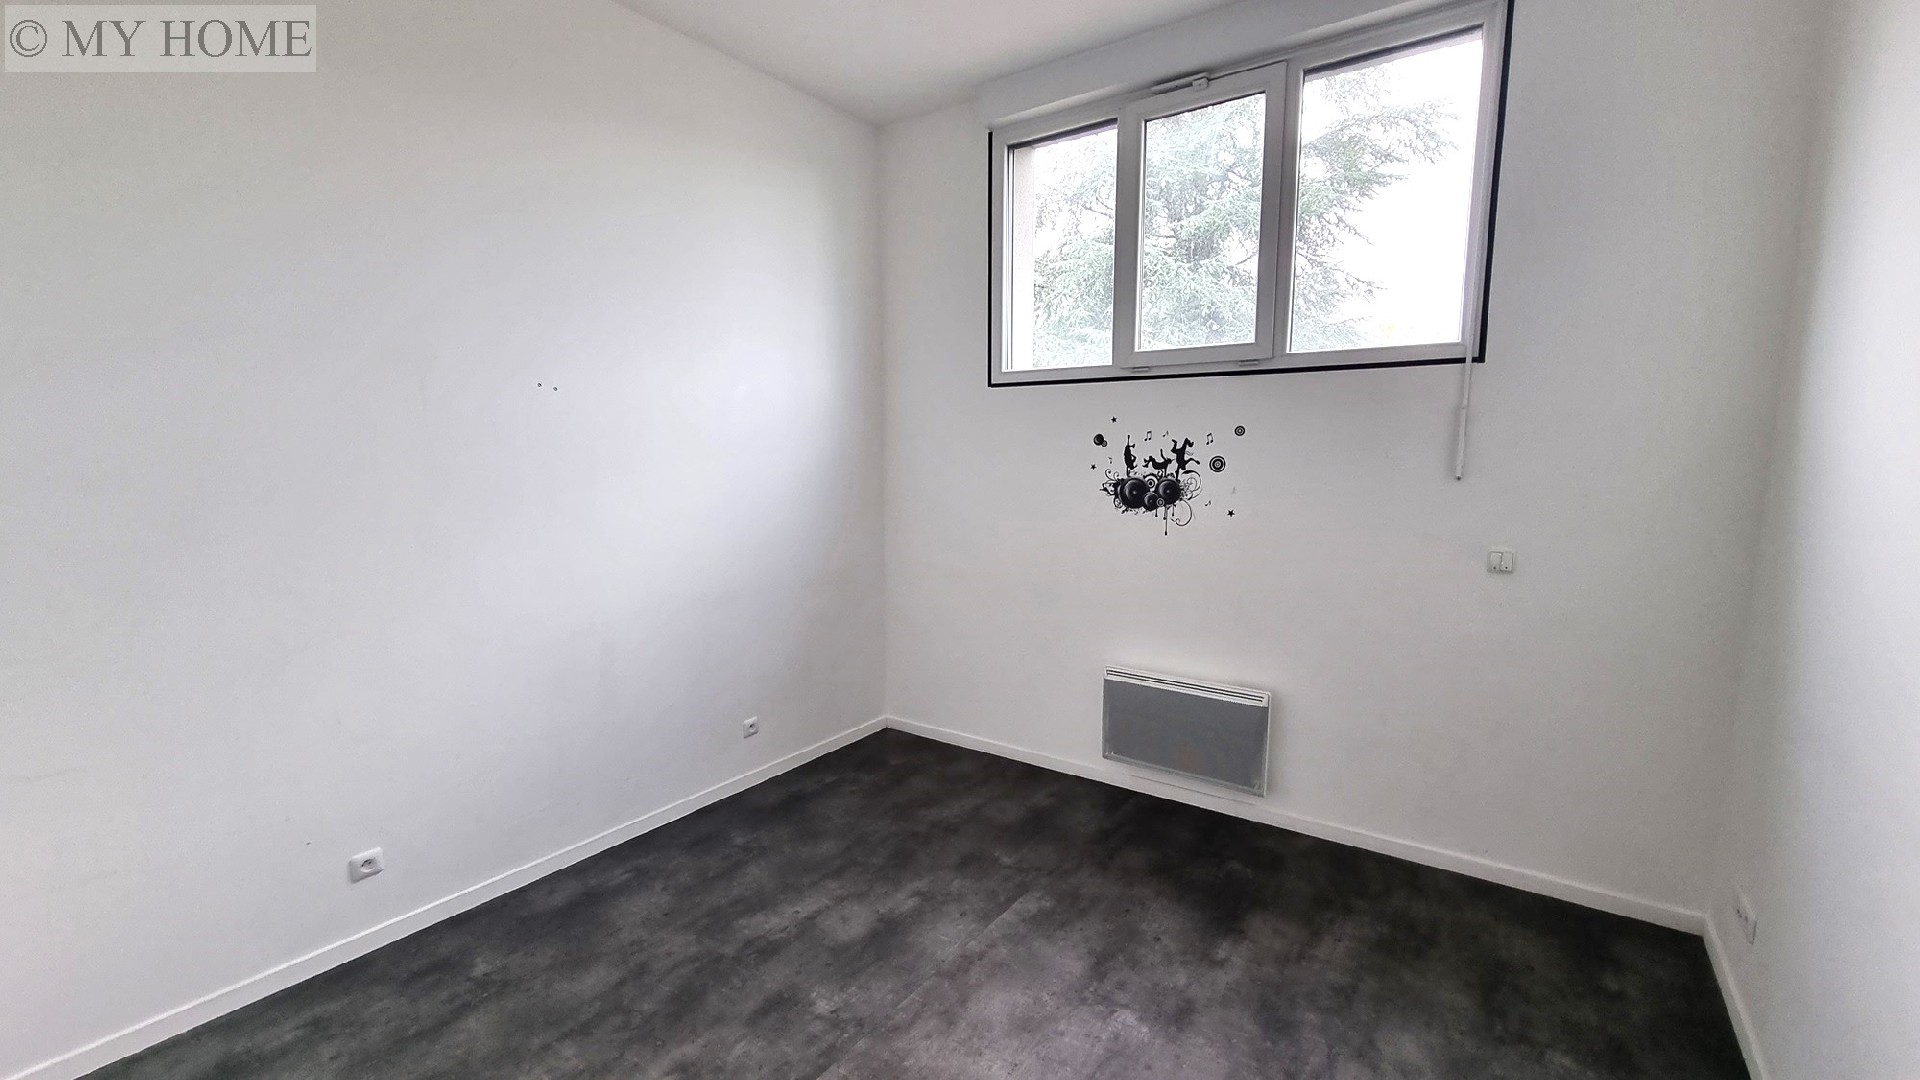 Location appartement - TOUL 93 m², 5 pièces